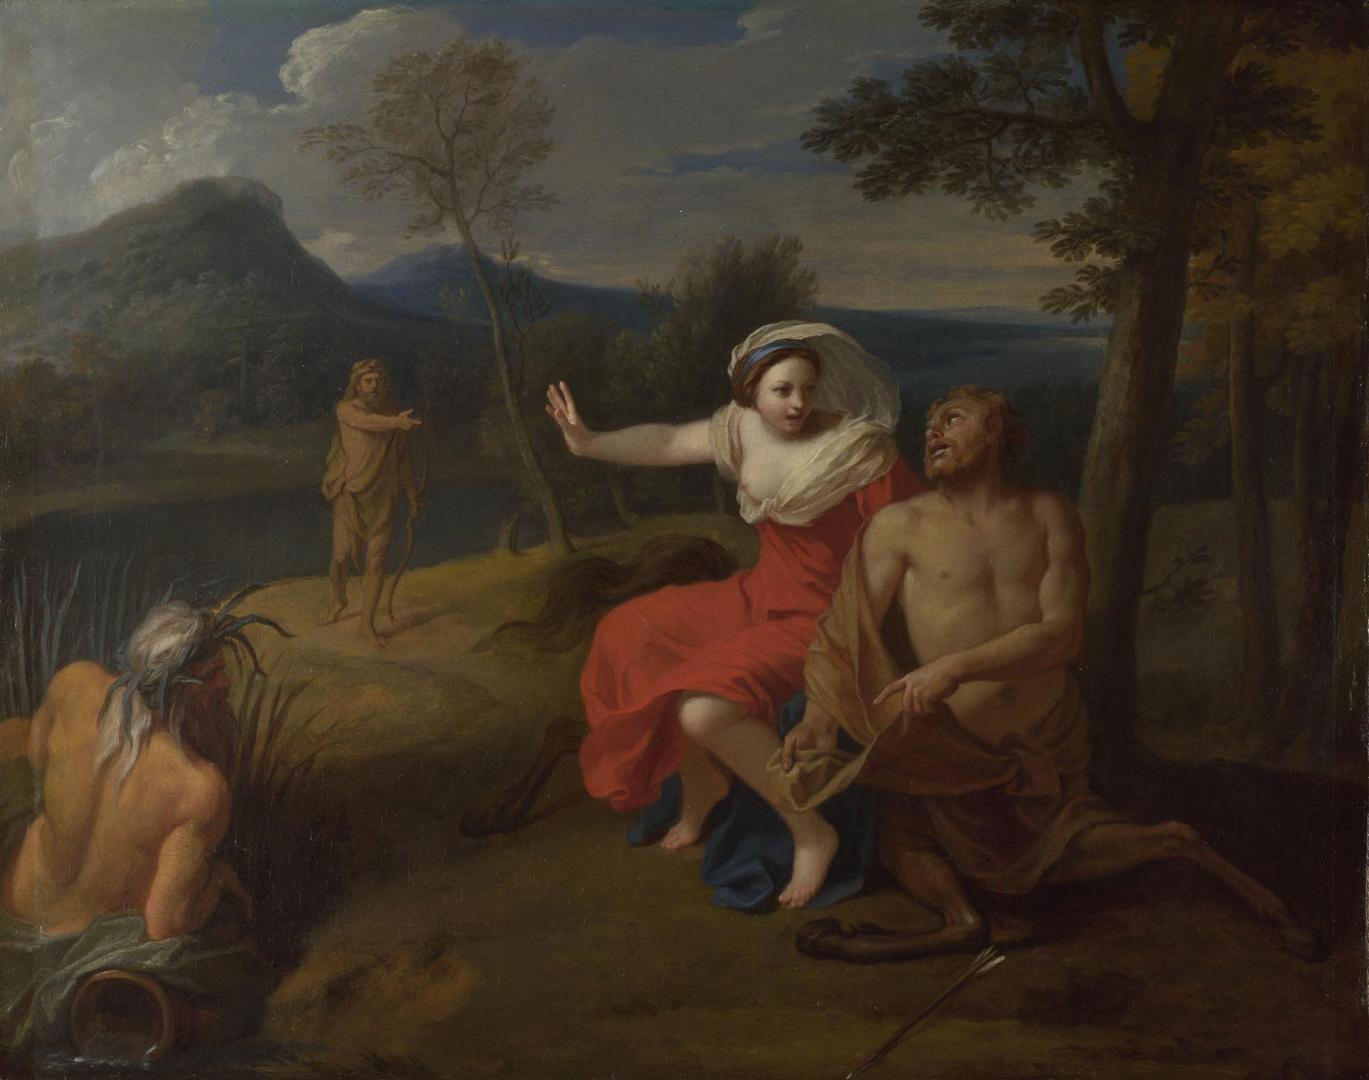 Nessus and Dejanira by Louis de Boullogne